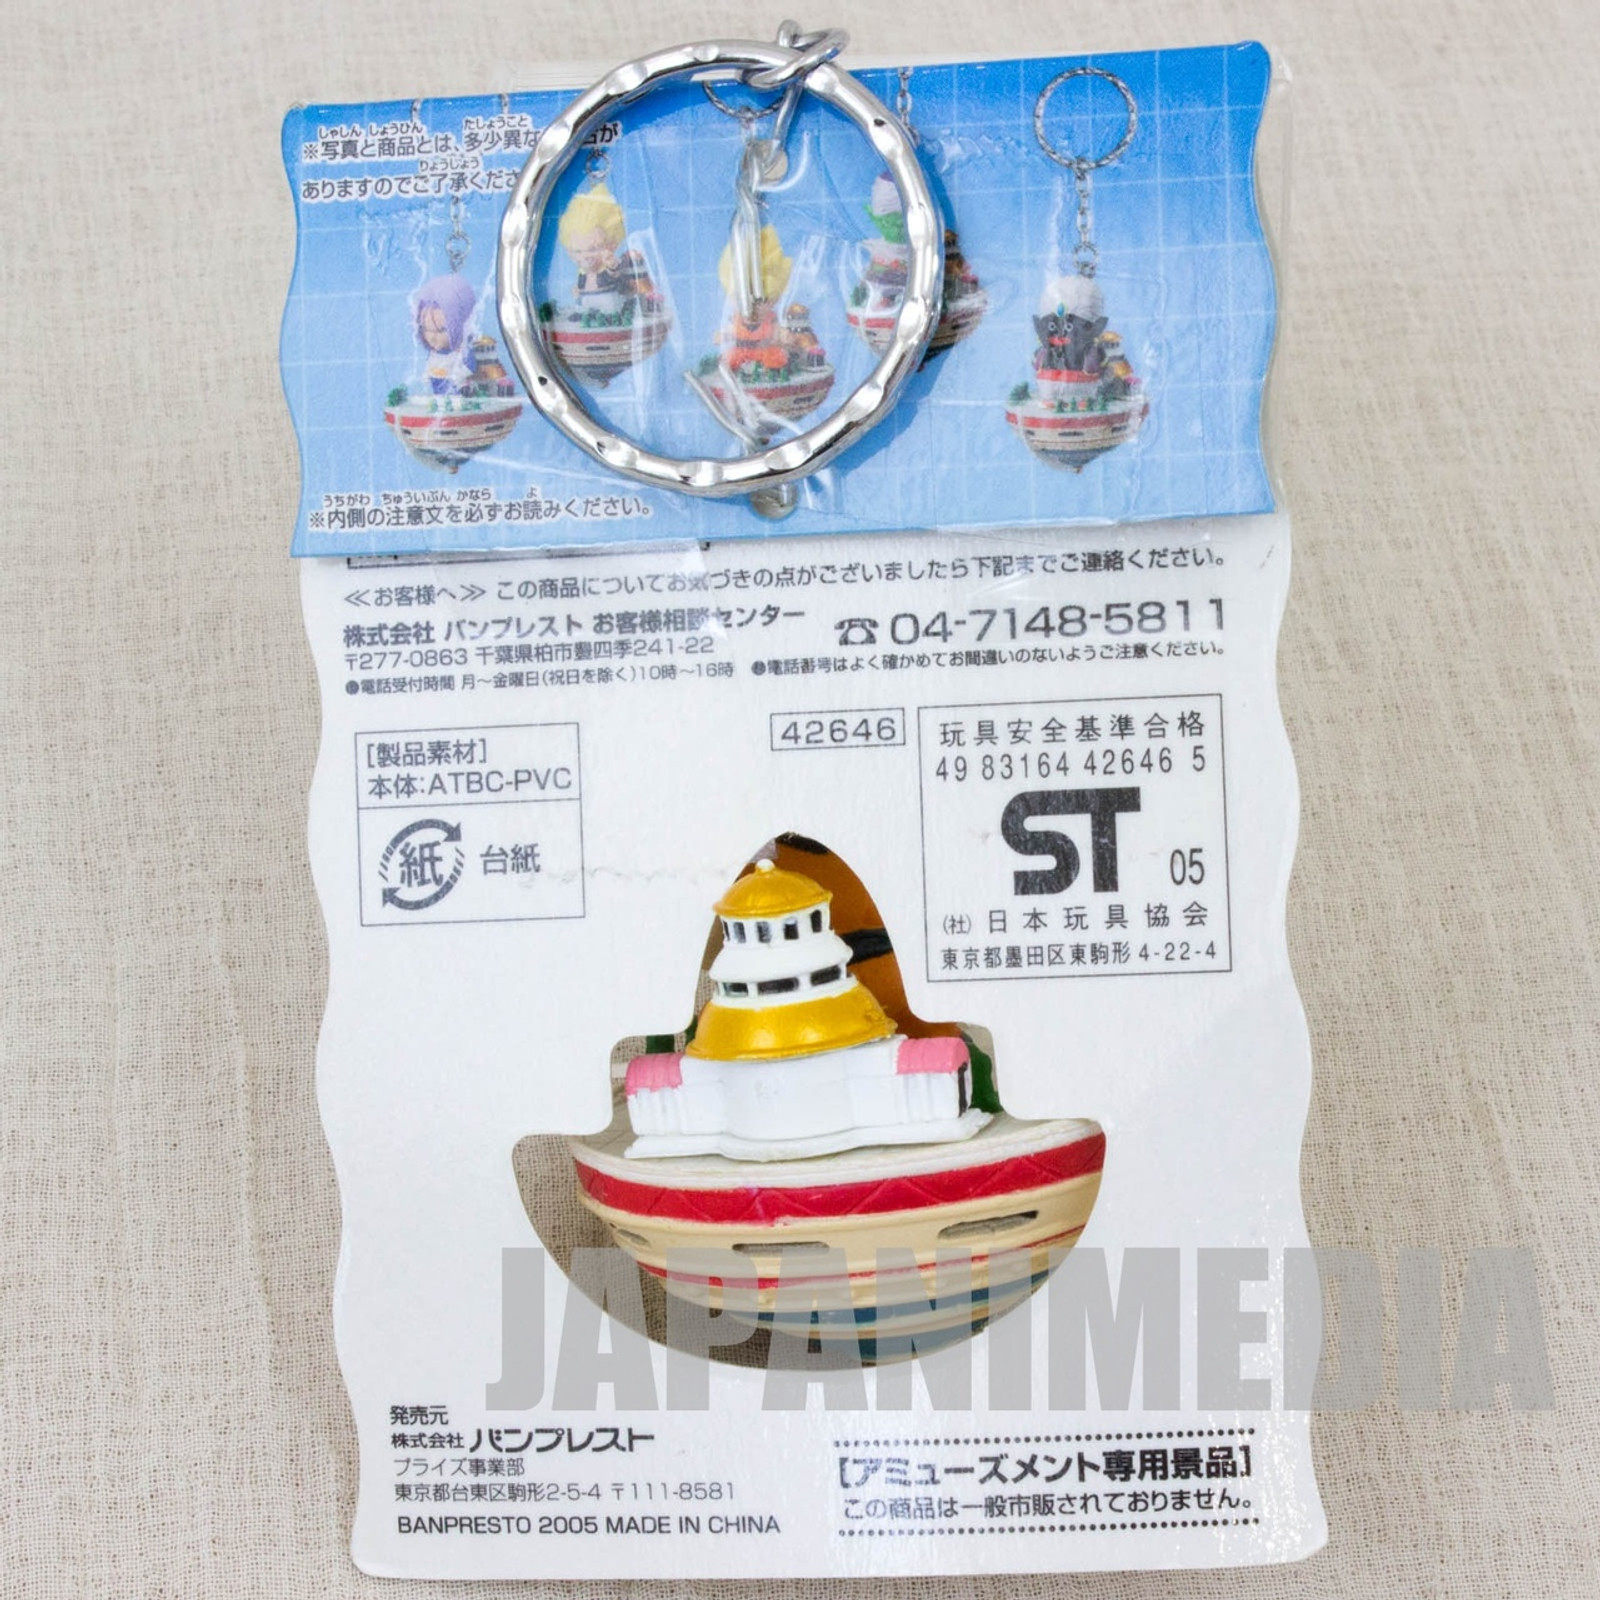 Dragon Ball Z S.Saiyan Gokou God's Temple Figure Key Chain Banpresto JAPAN ANIME